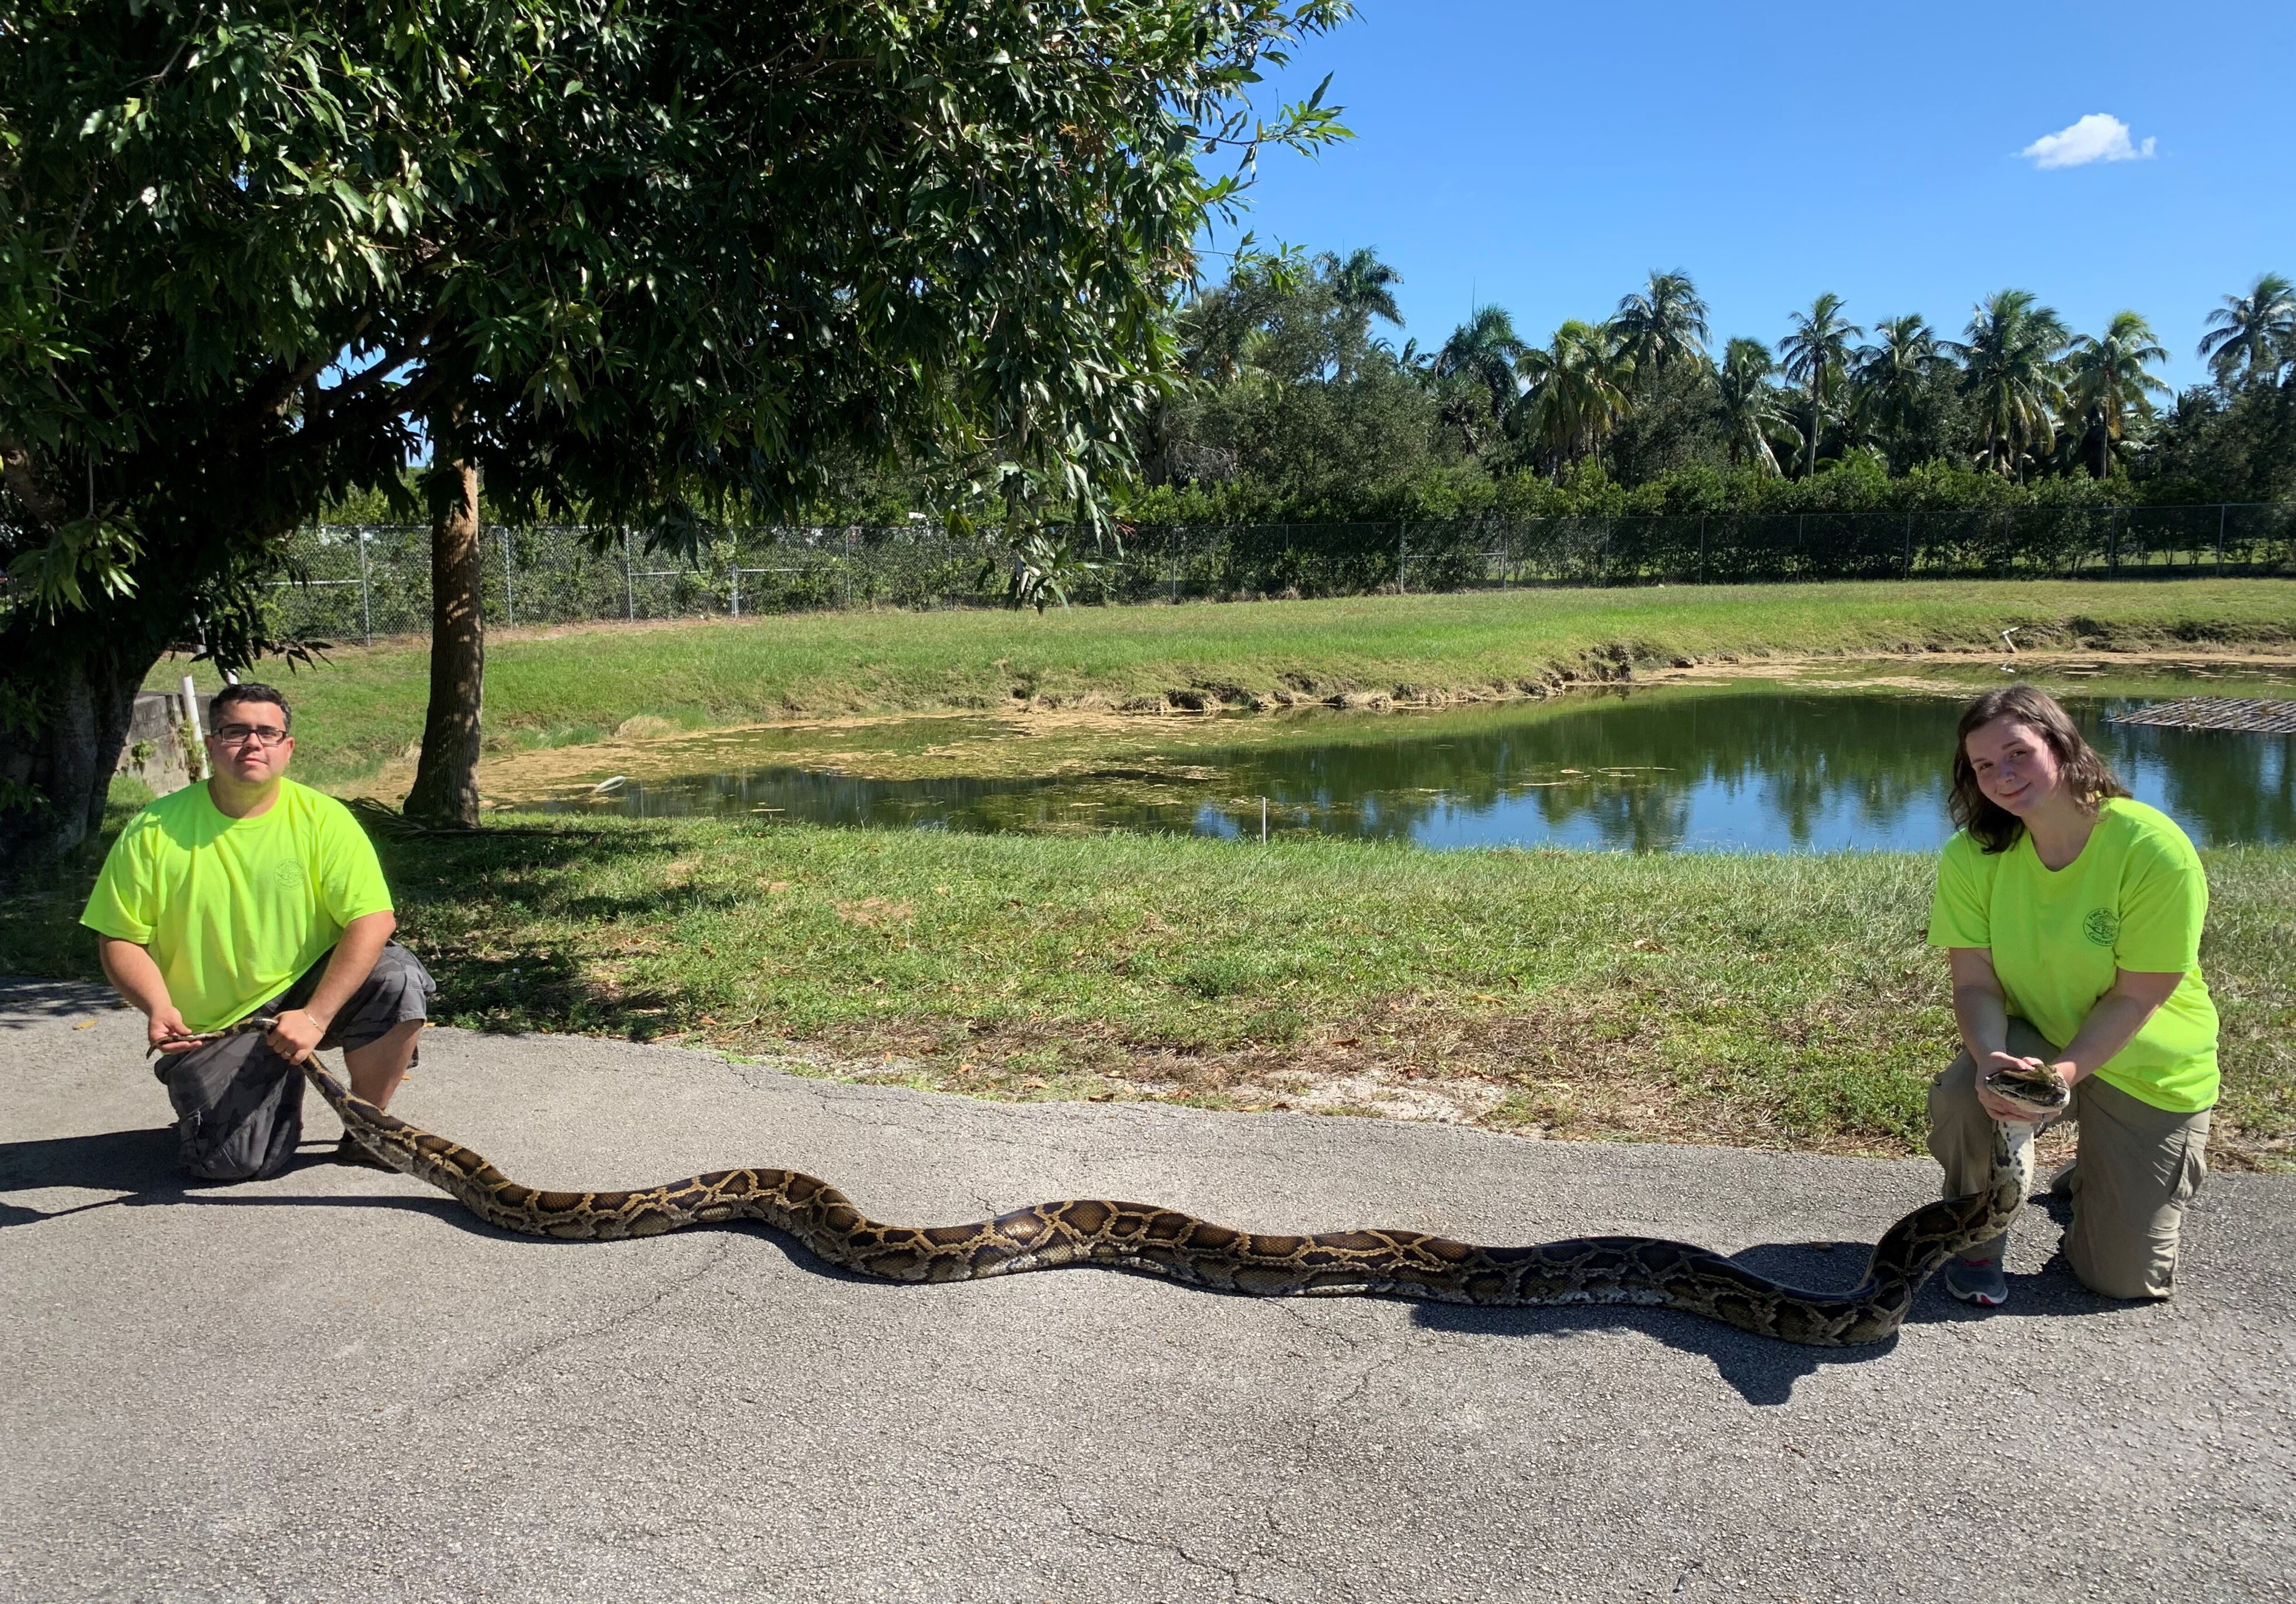 фотография самой большой змеи